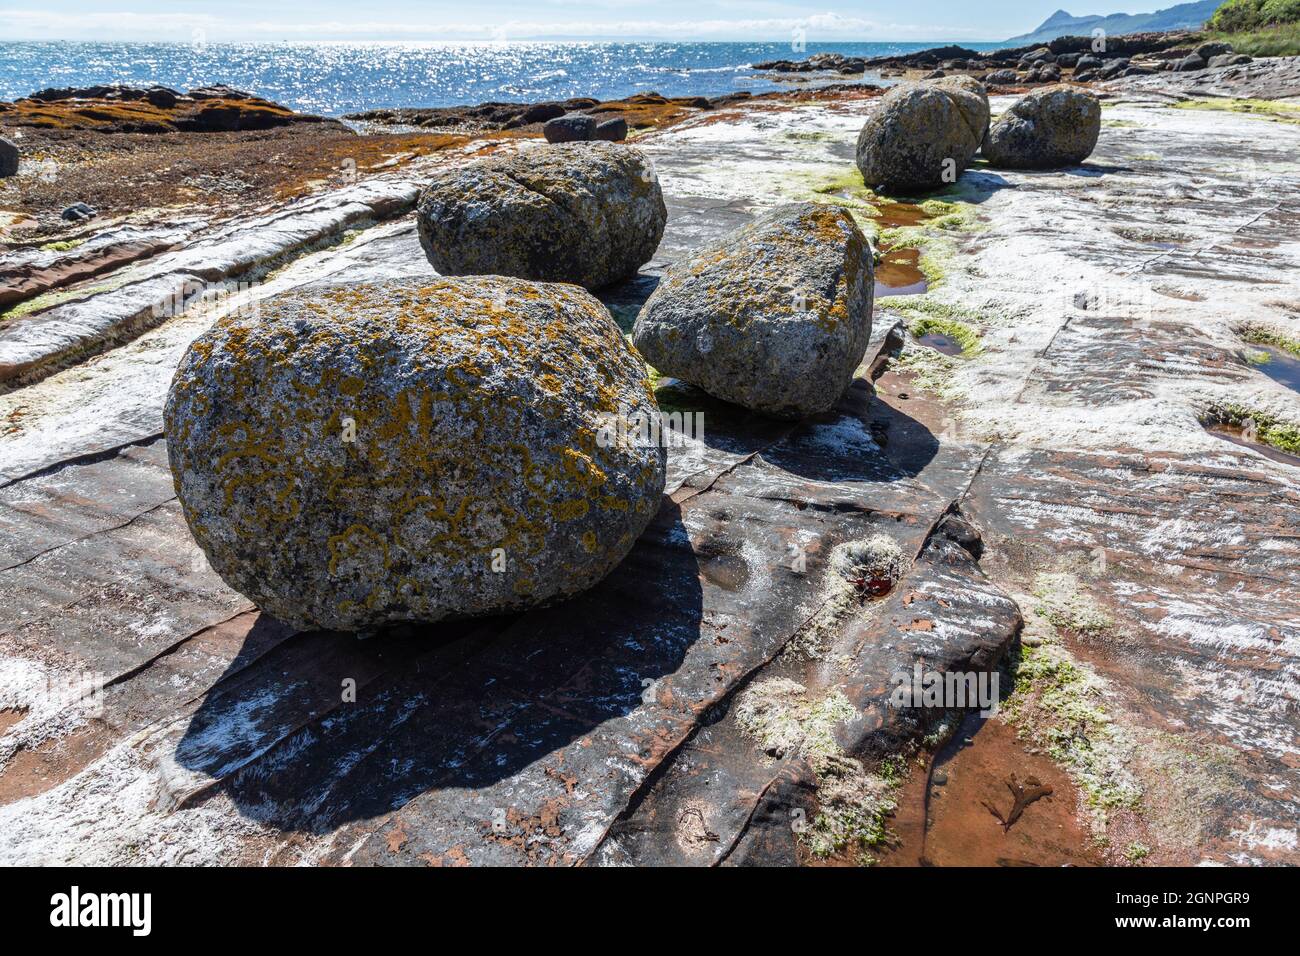 Foliose lichen ha coperto massi di granito glaciali irregolari su roccia arenaria, Pirate's Cove, Merkland Point, Isola di Arran, North Ayrshire, Scozia, Foto Stock